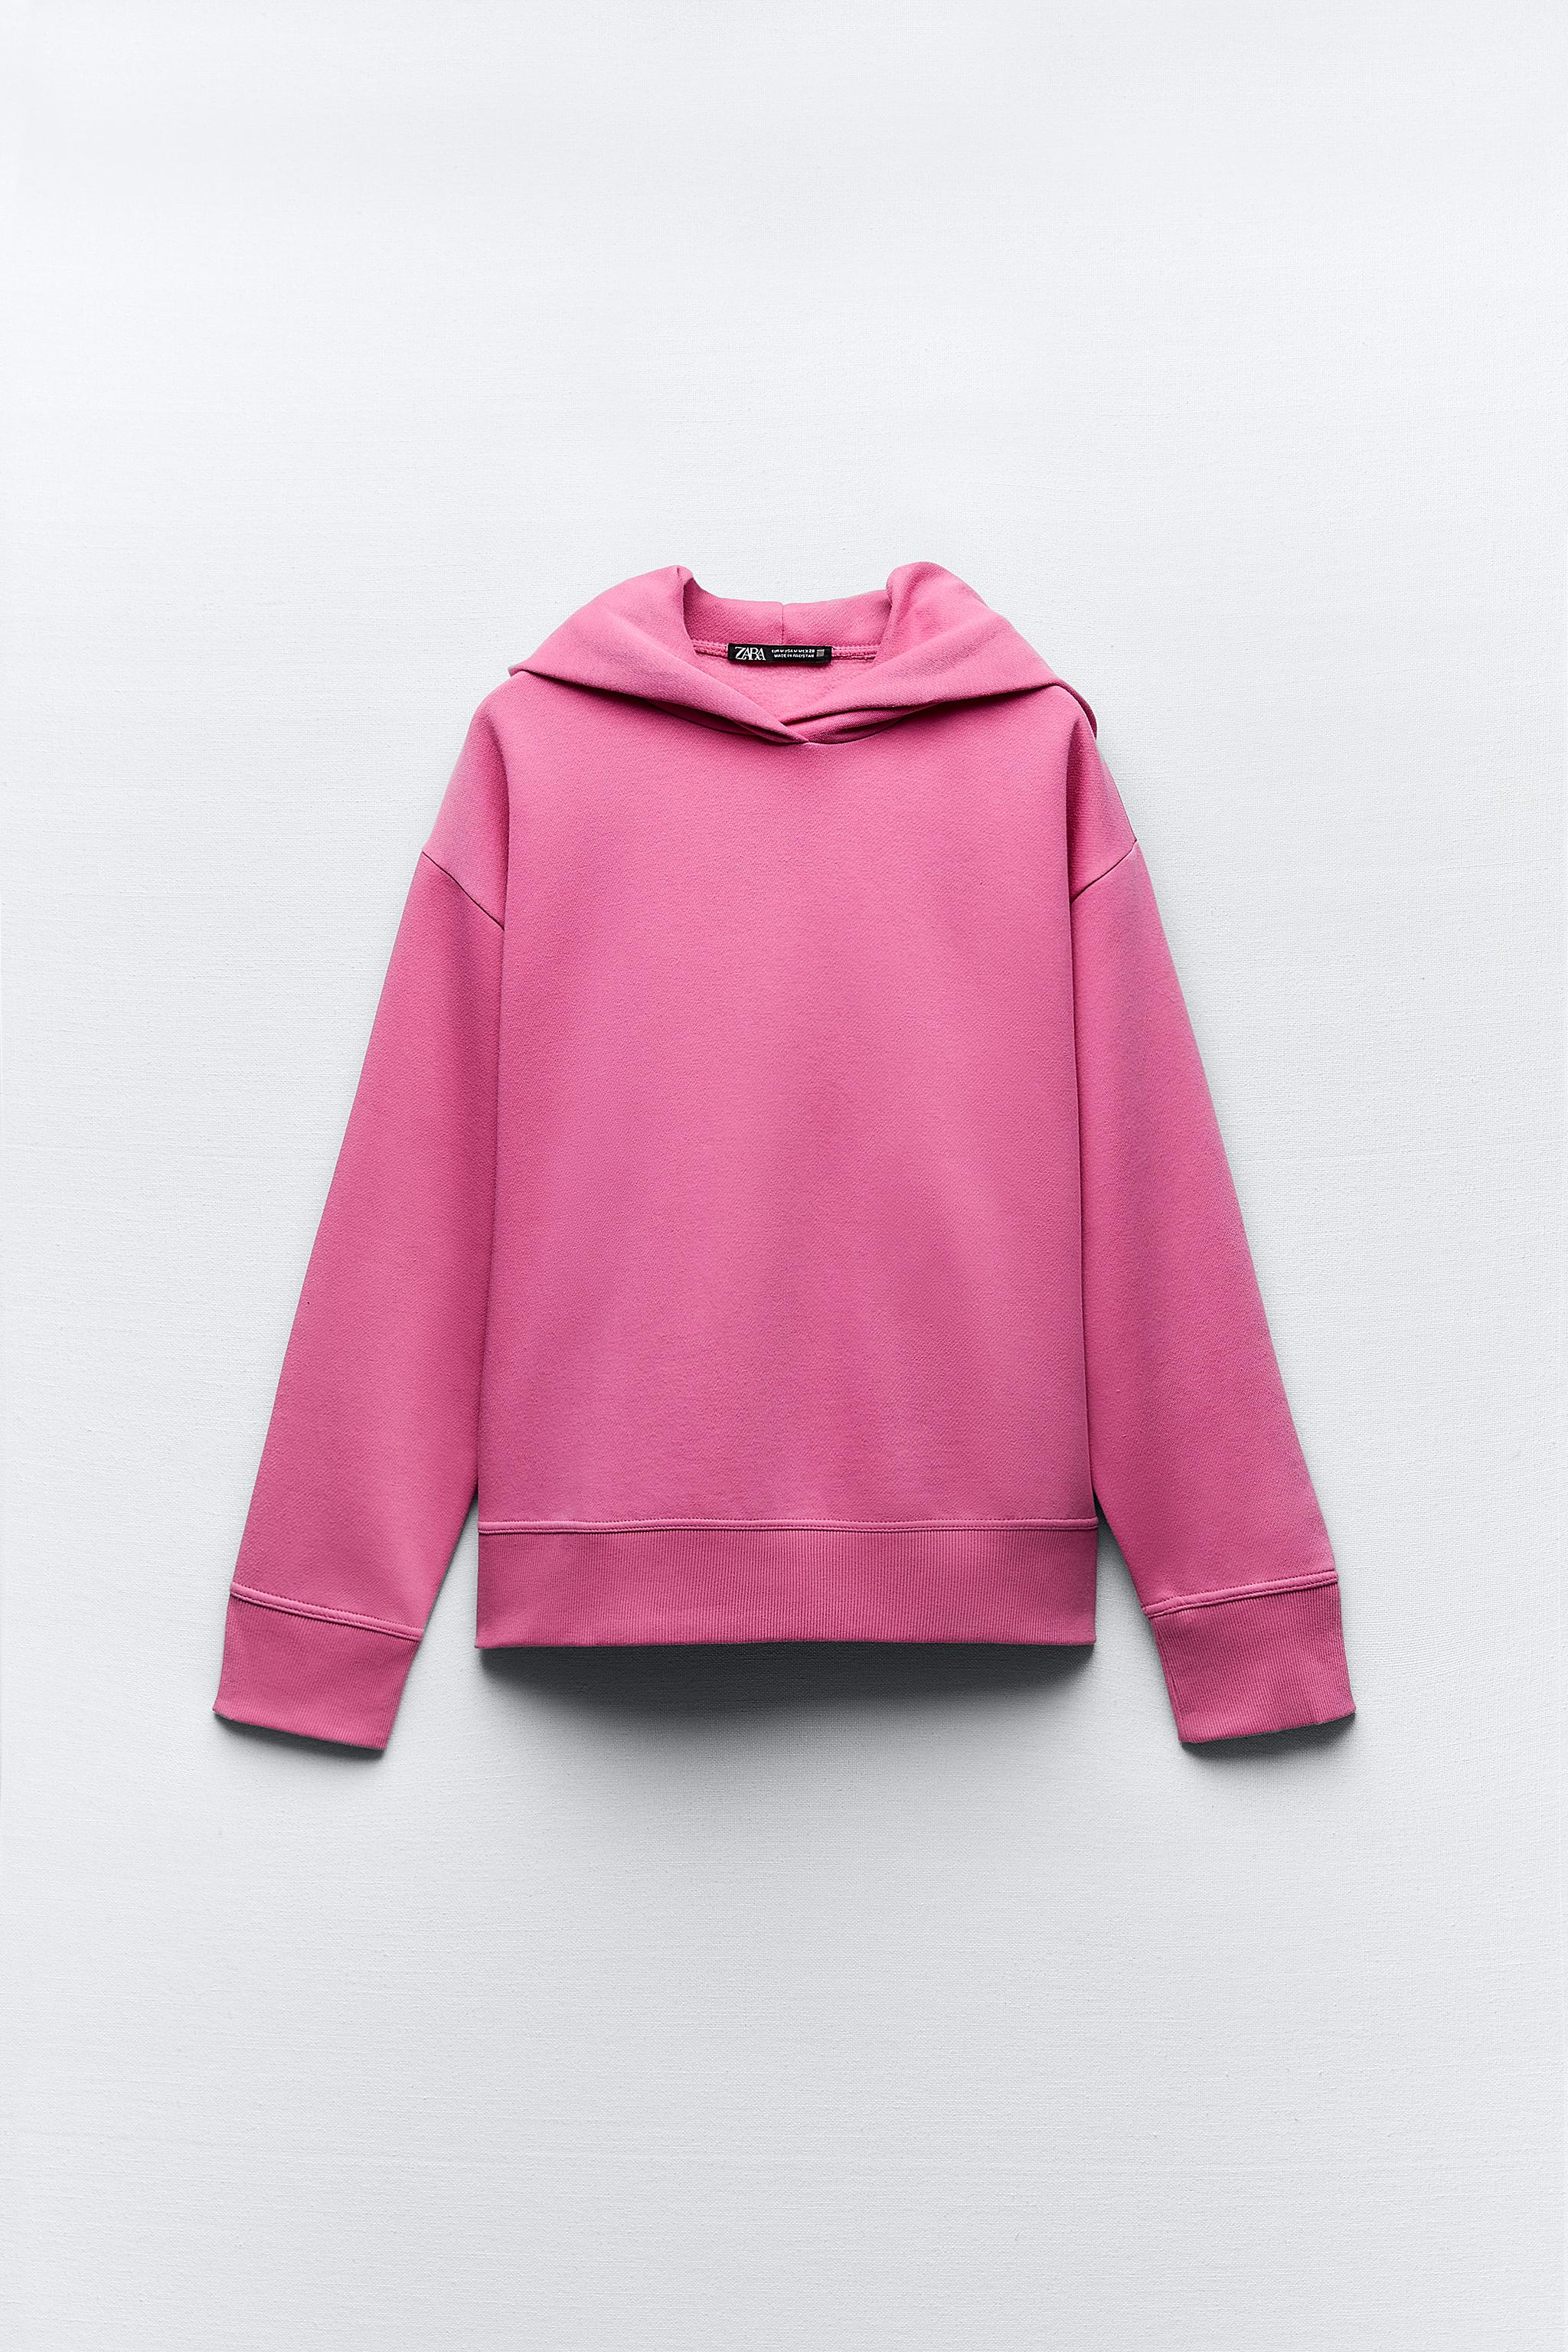 Zara Dupe Custom Sweatshirt, Sweatsuit, Toddler Jogger Set, Gift